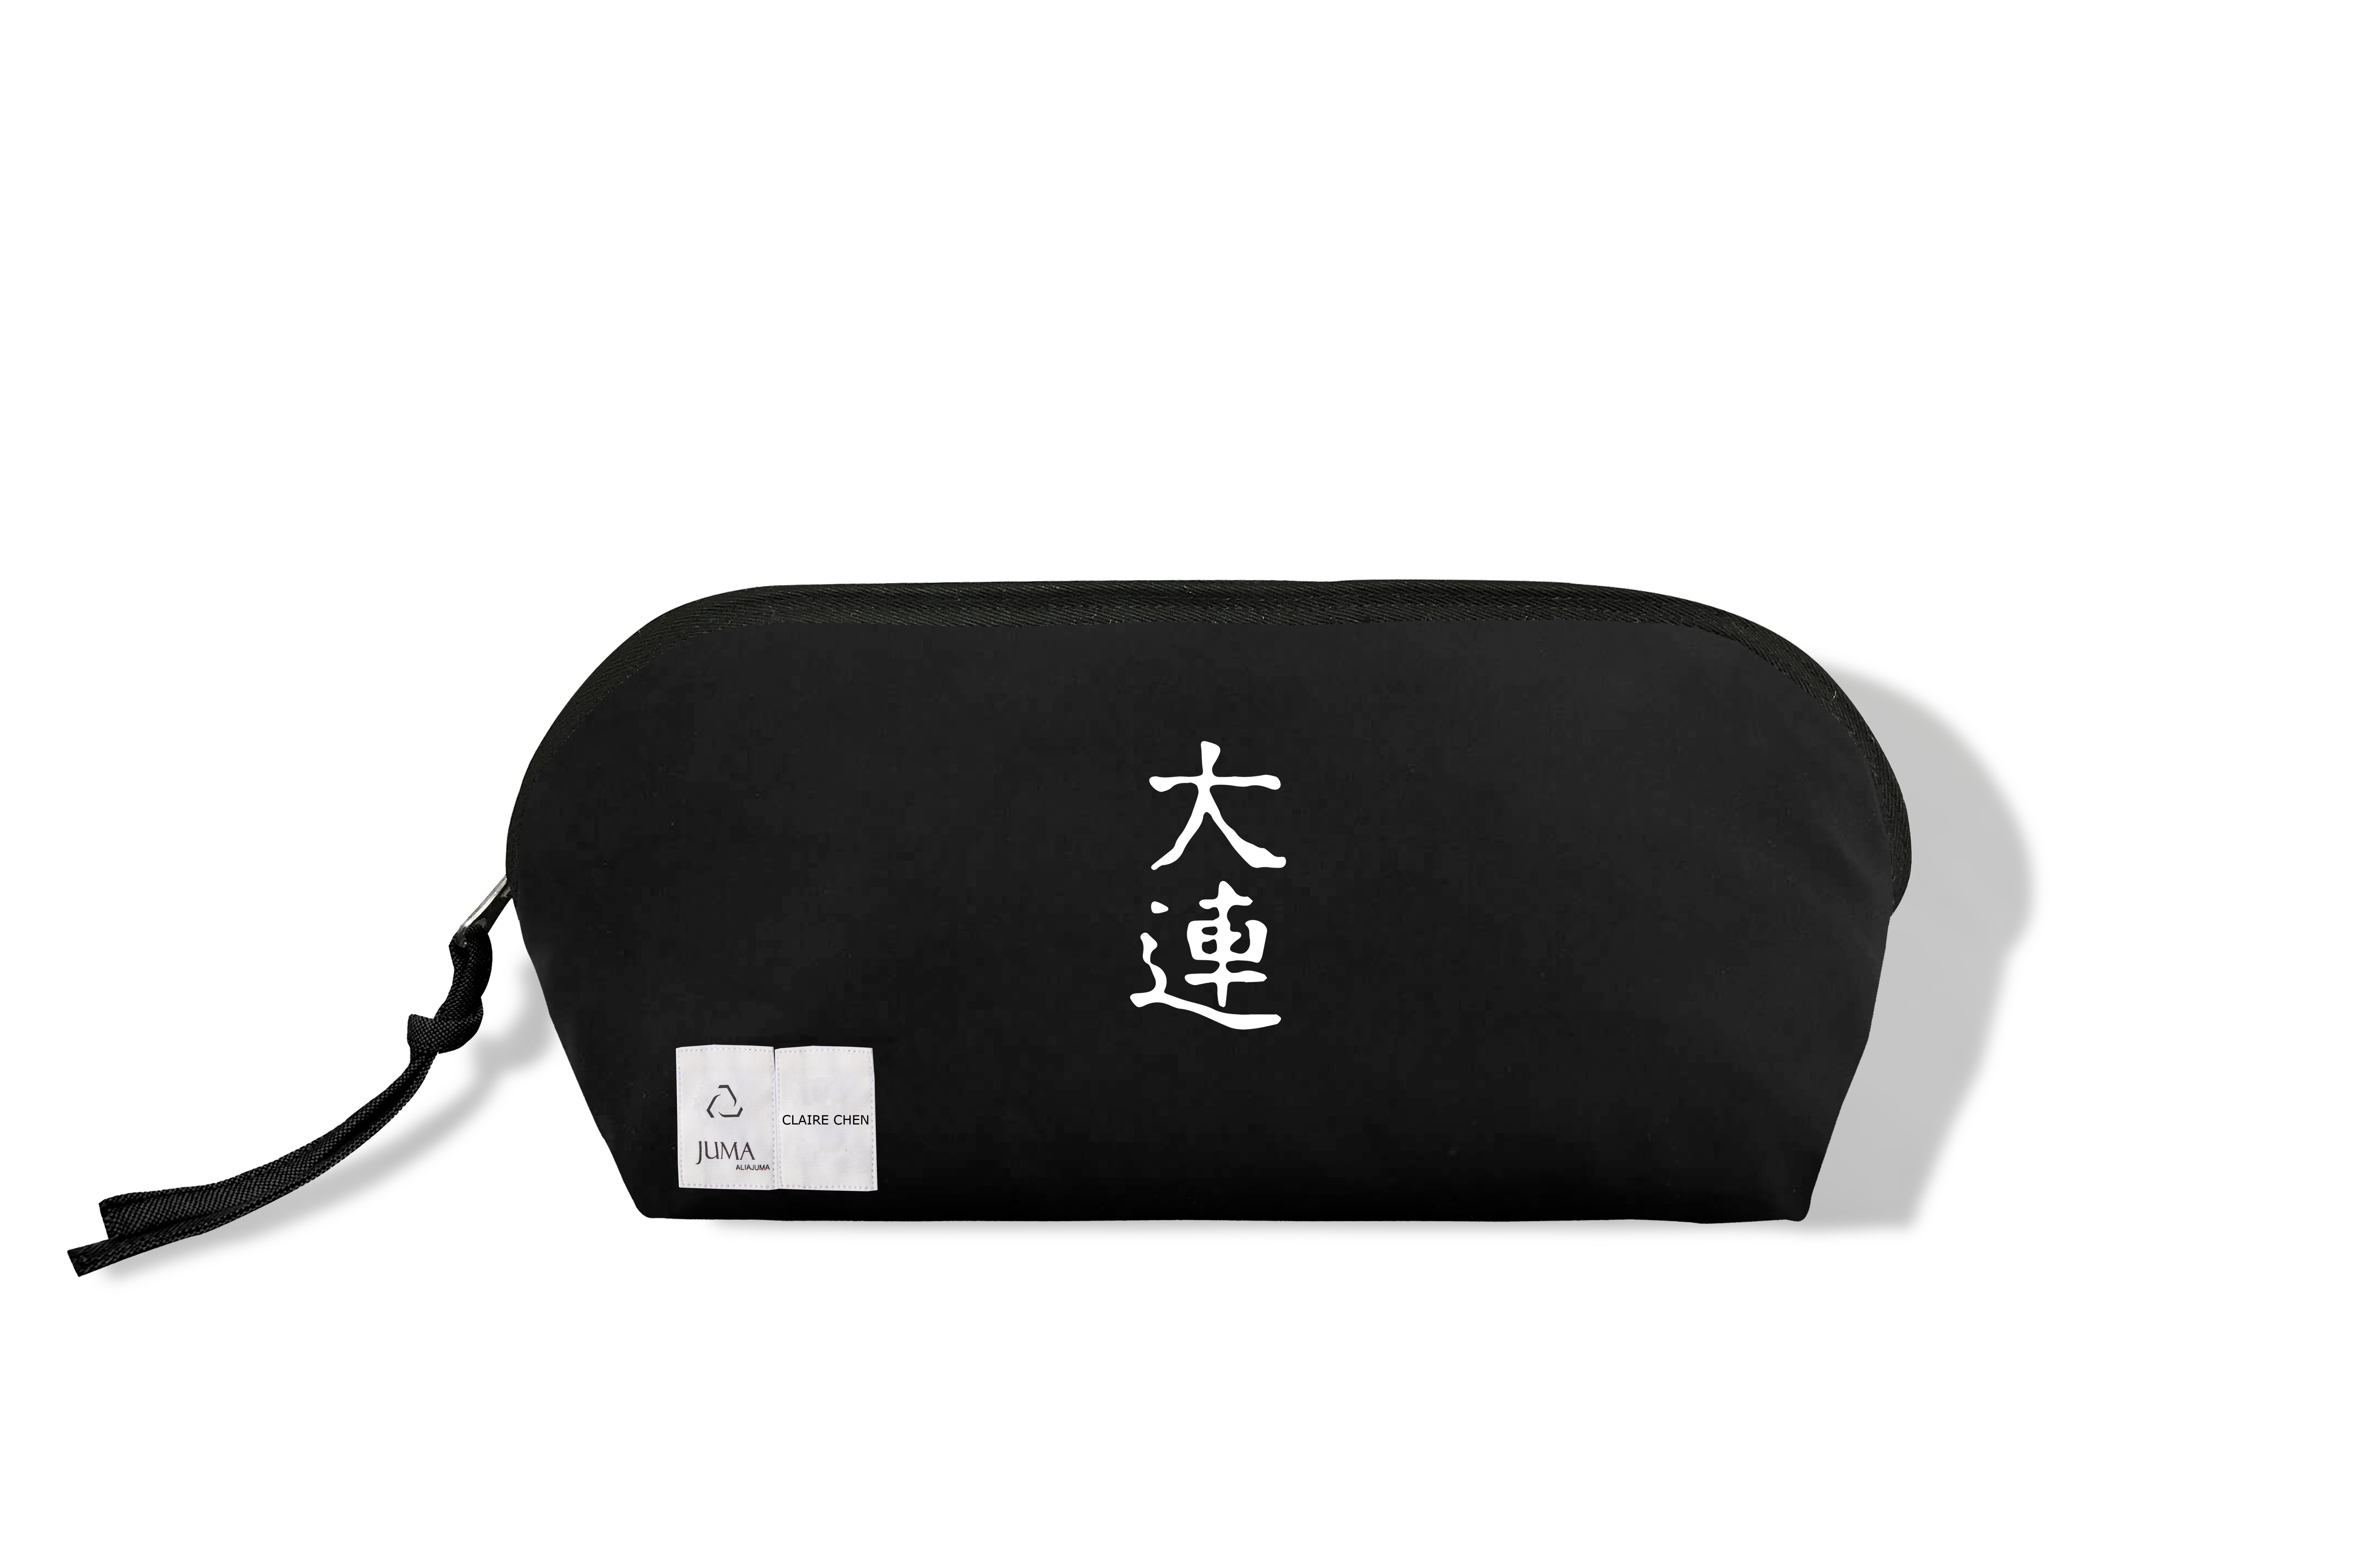 于洋 Print 1 旅行包 - 2 个再生水瓶 - 黑色｜Yang Yu Print 1 Travel Bag - 2 Recycled Water Bottles - Black